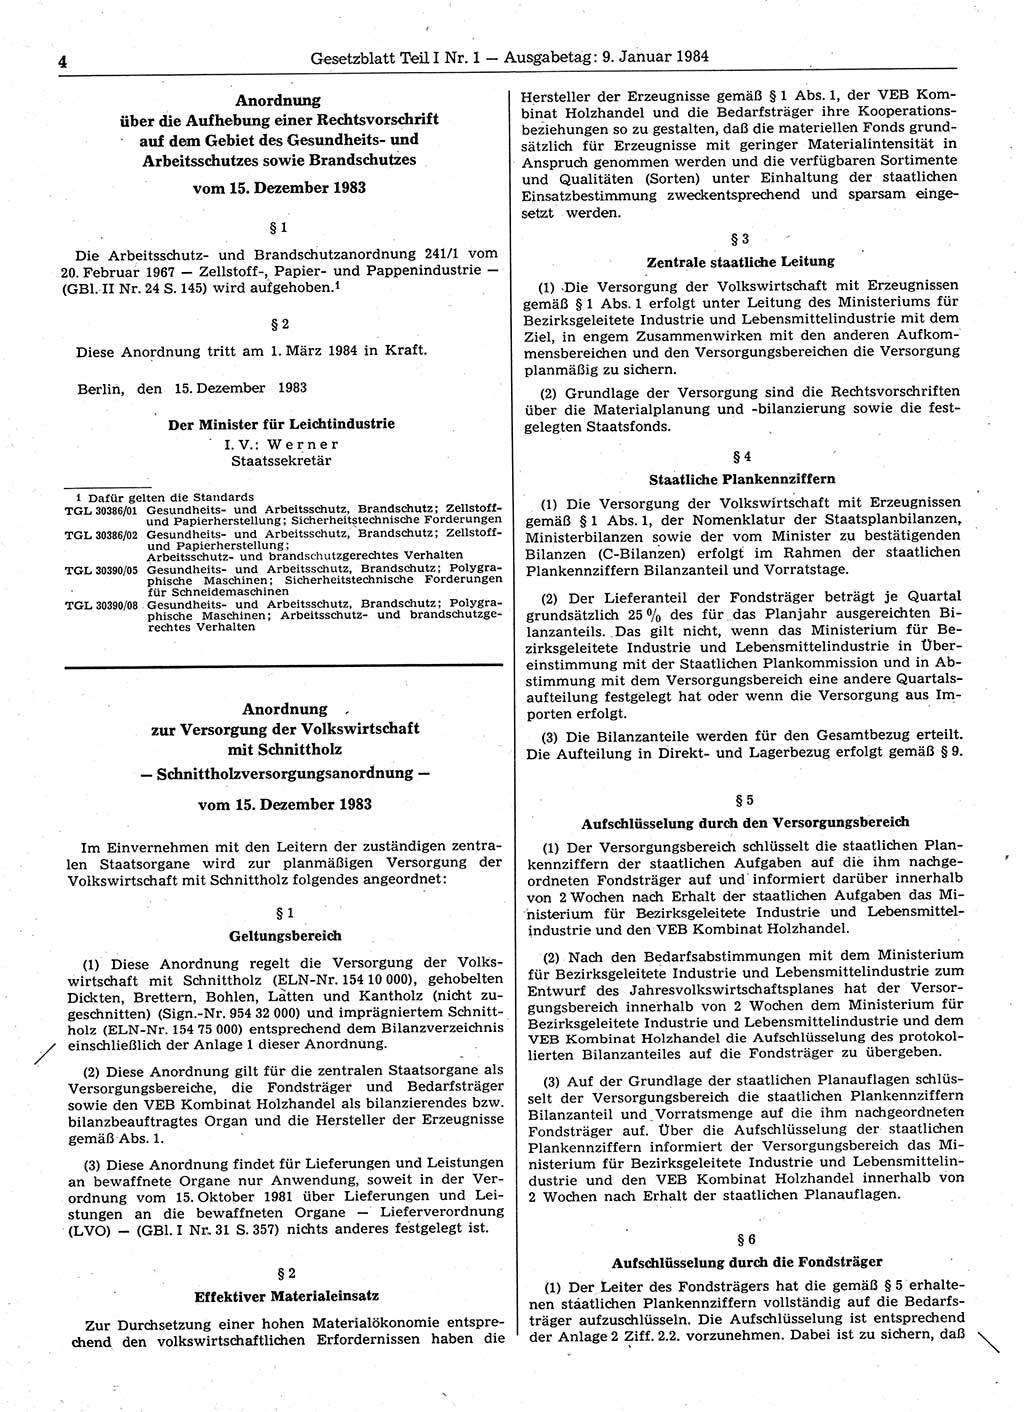 Gesetzblatt (GBl.) der Deutschen Demokratischen Republik (DDR) Teil Ⅰ 1984, Seite 4 (GBl. DDR Ⅰ 1984, S. 4)